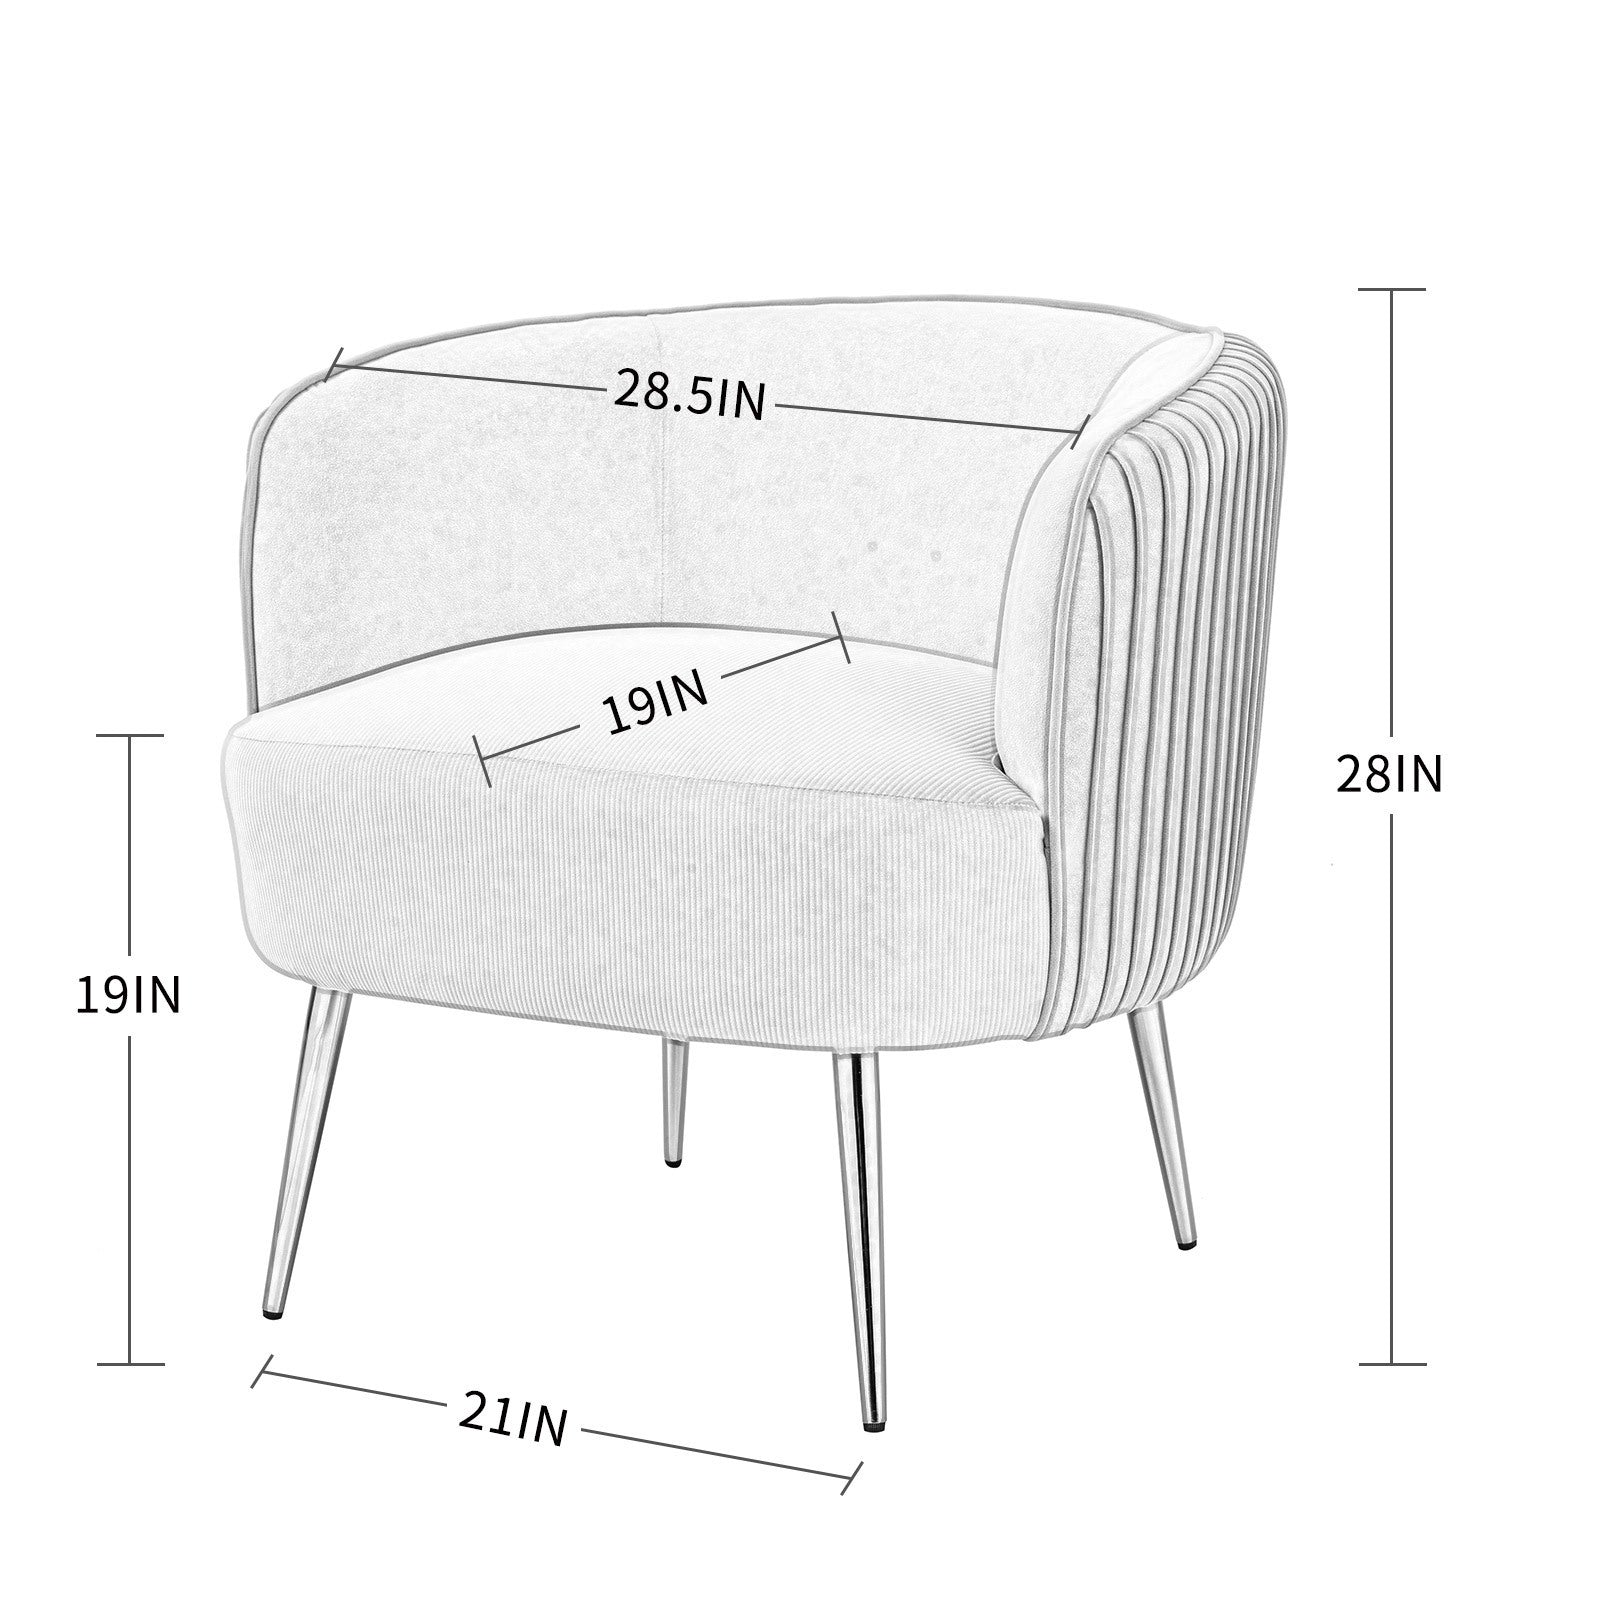 Velvet Accent Upholstered Chair (Green)